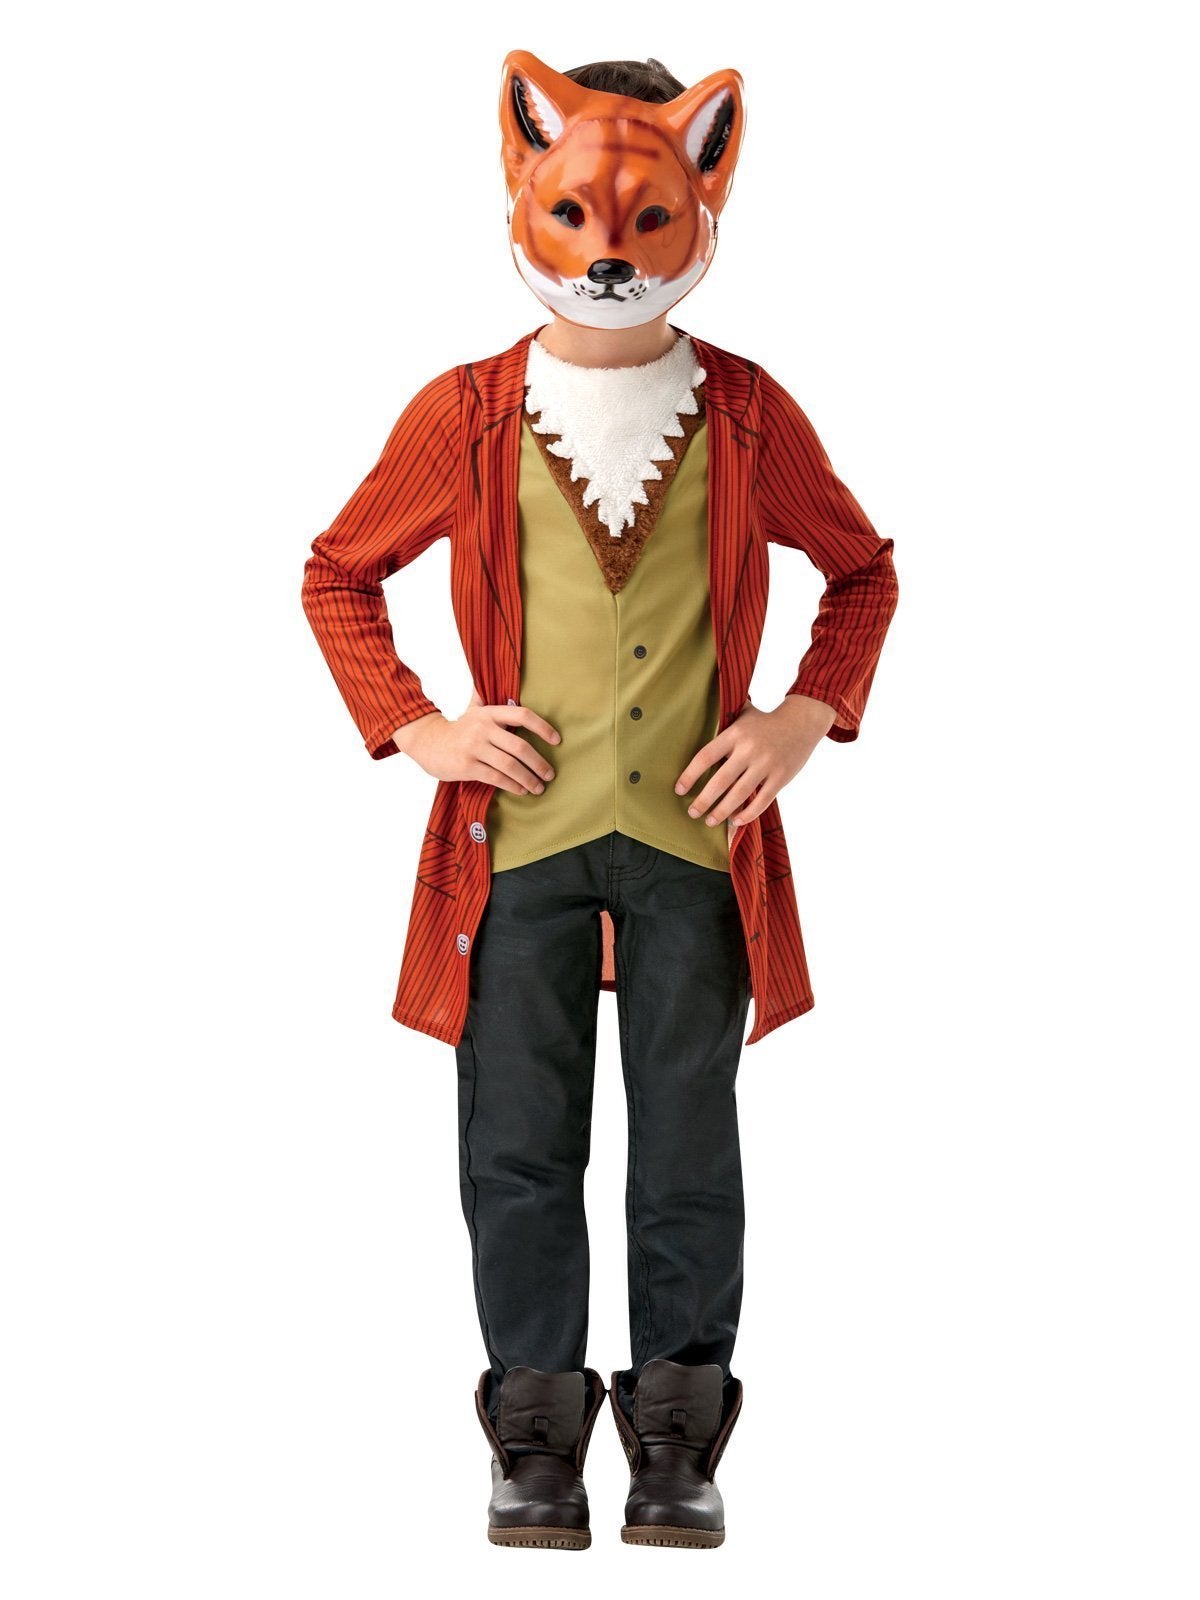 Mr Fox Deluxe Costume for Kids & Tweens